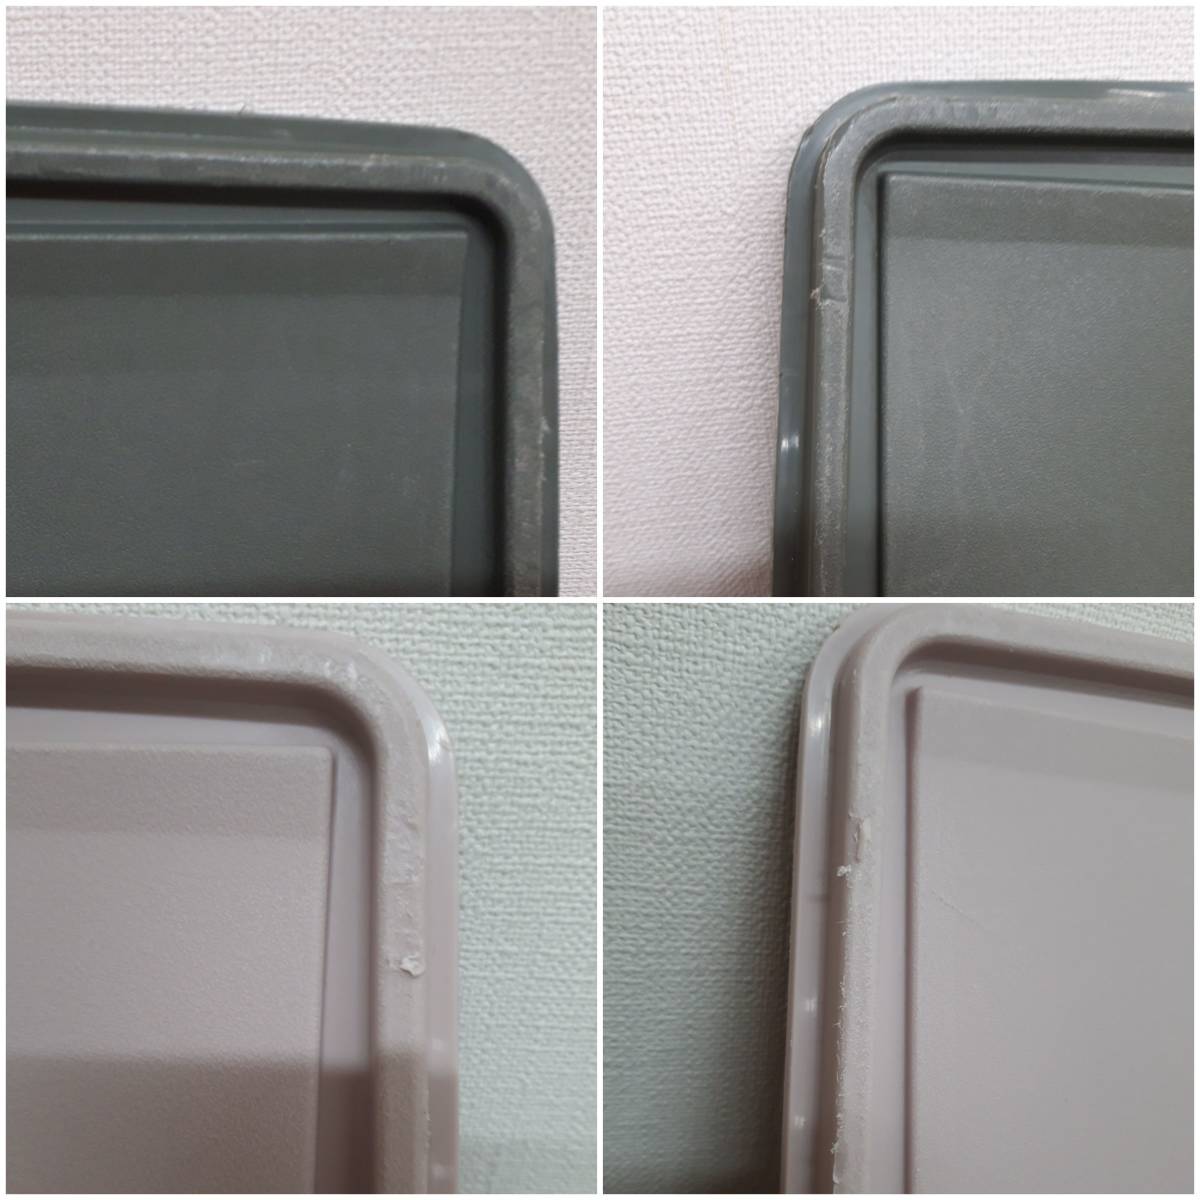 [菊水-8389]タッパーウェア 収納ケース 2個セット ライトピンク約48×38×12㎝ グレー(グリーン)約48×38×24㎝ 衣装ケース Tupperware(MI)_蓋にスレキズ・削れている所がございます。